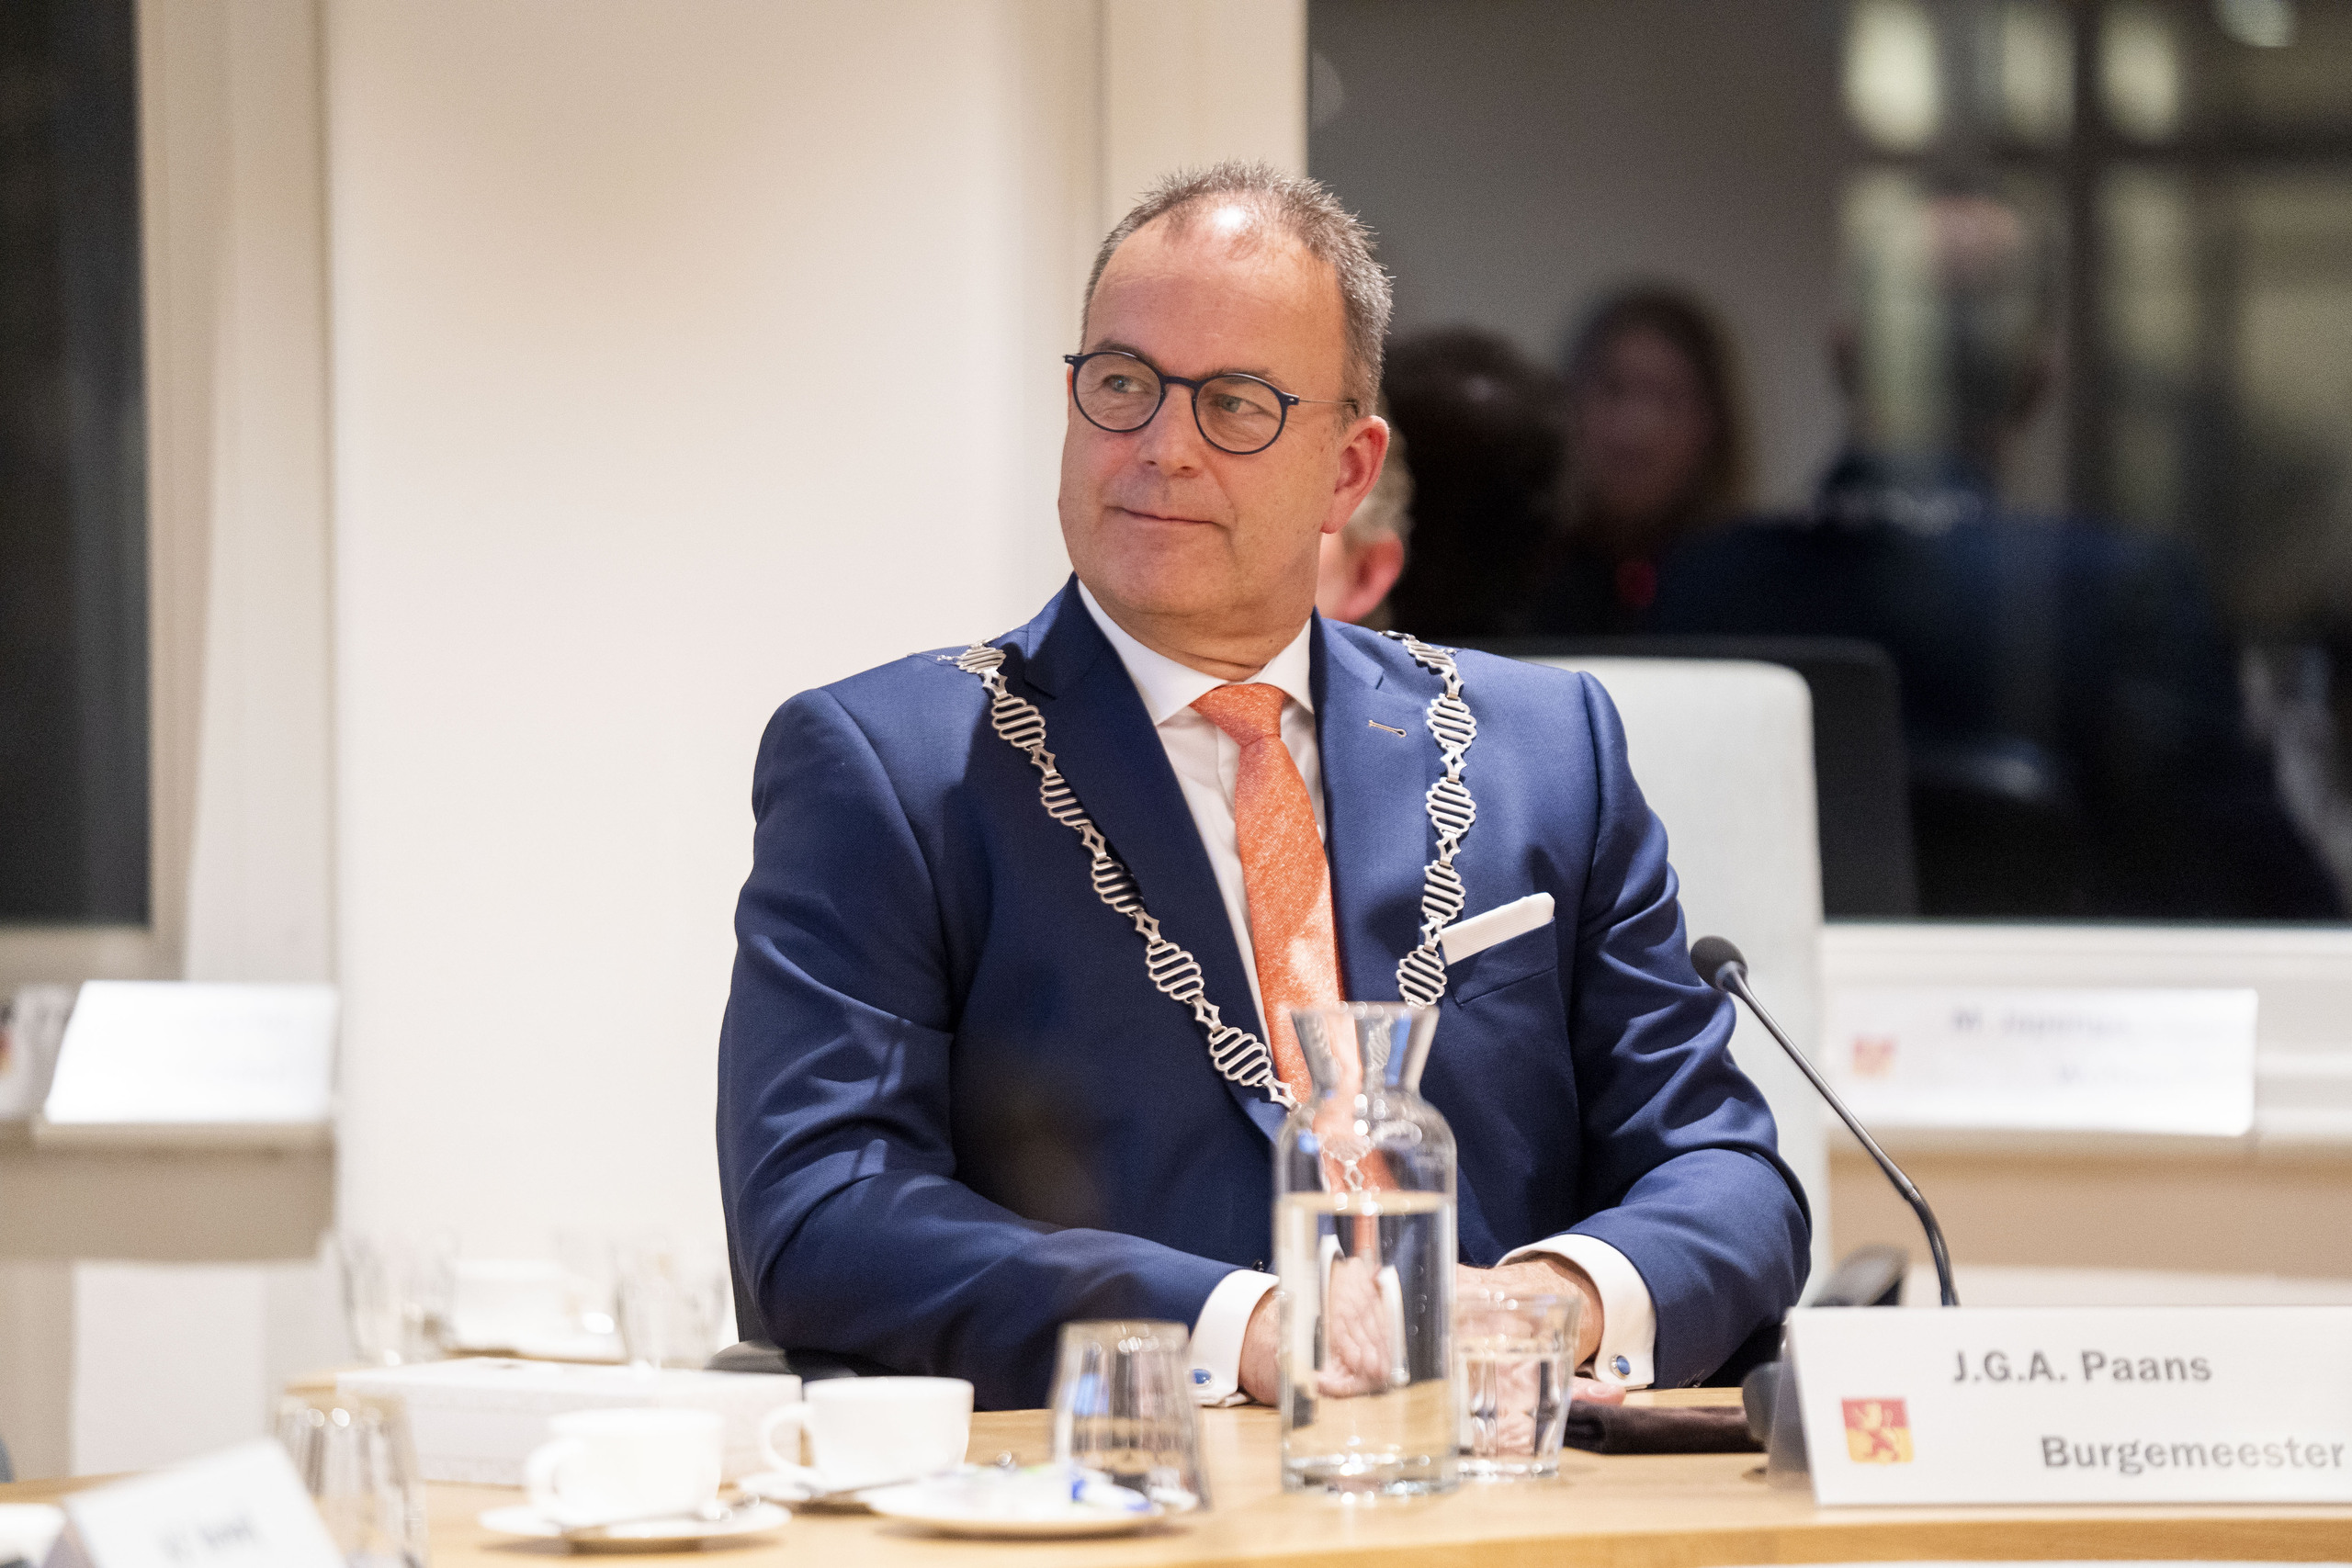 Jaap Paans heeft afscheid genomen als burgemeester van Alblasserdam. Dat gebeurde tijdens een bijzondere raadsvergadering.